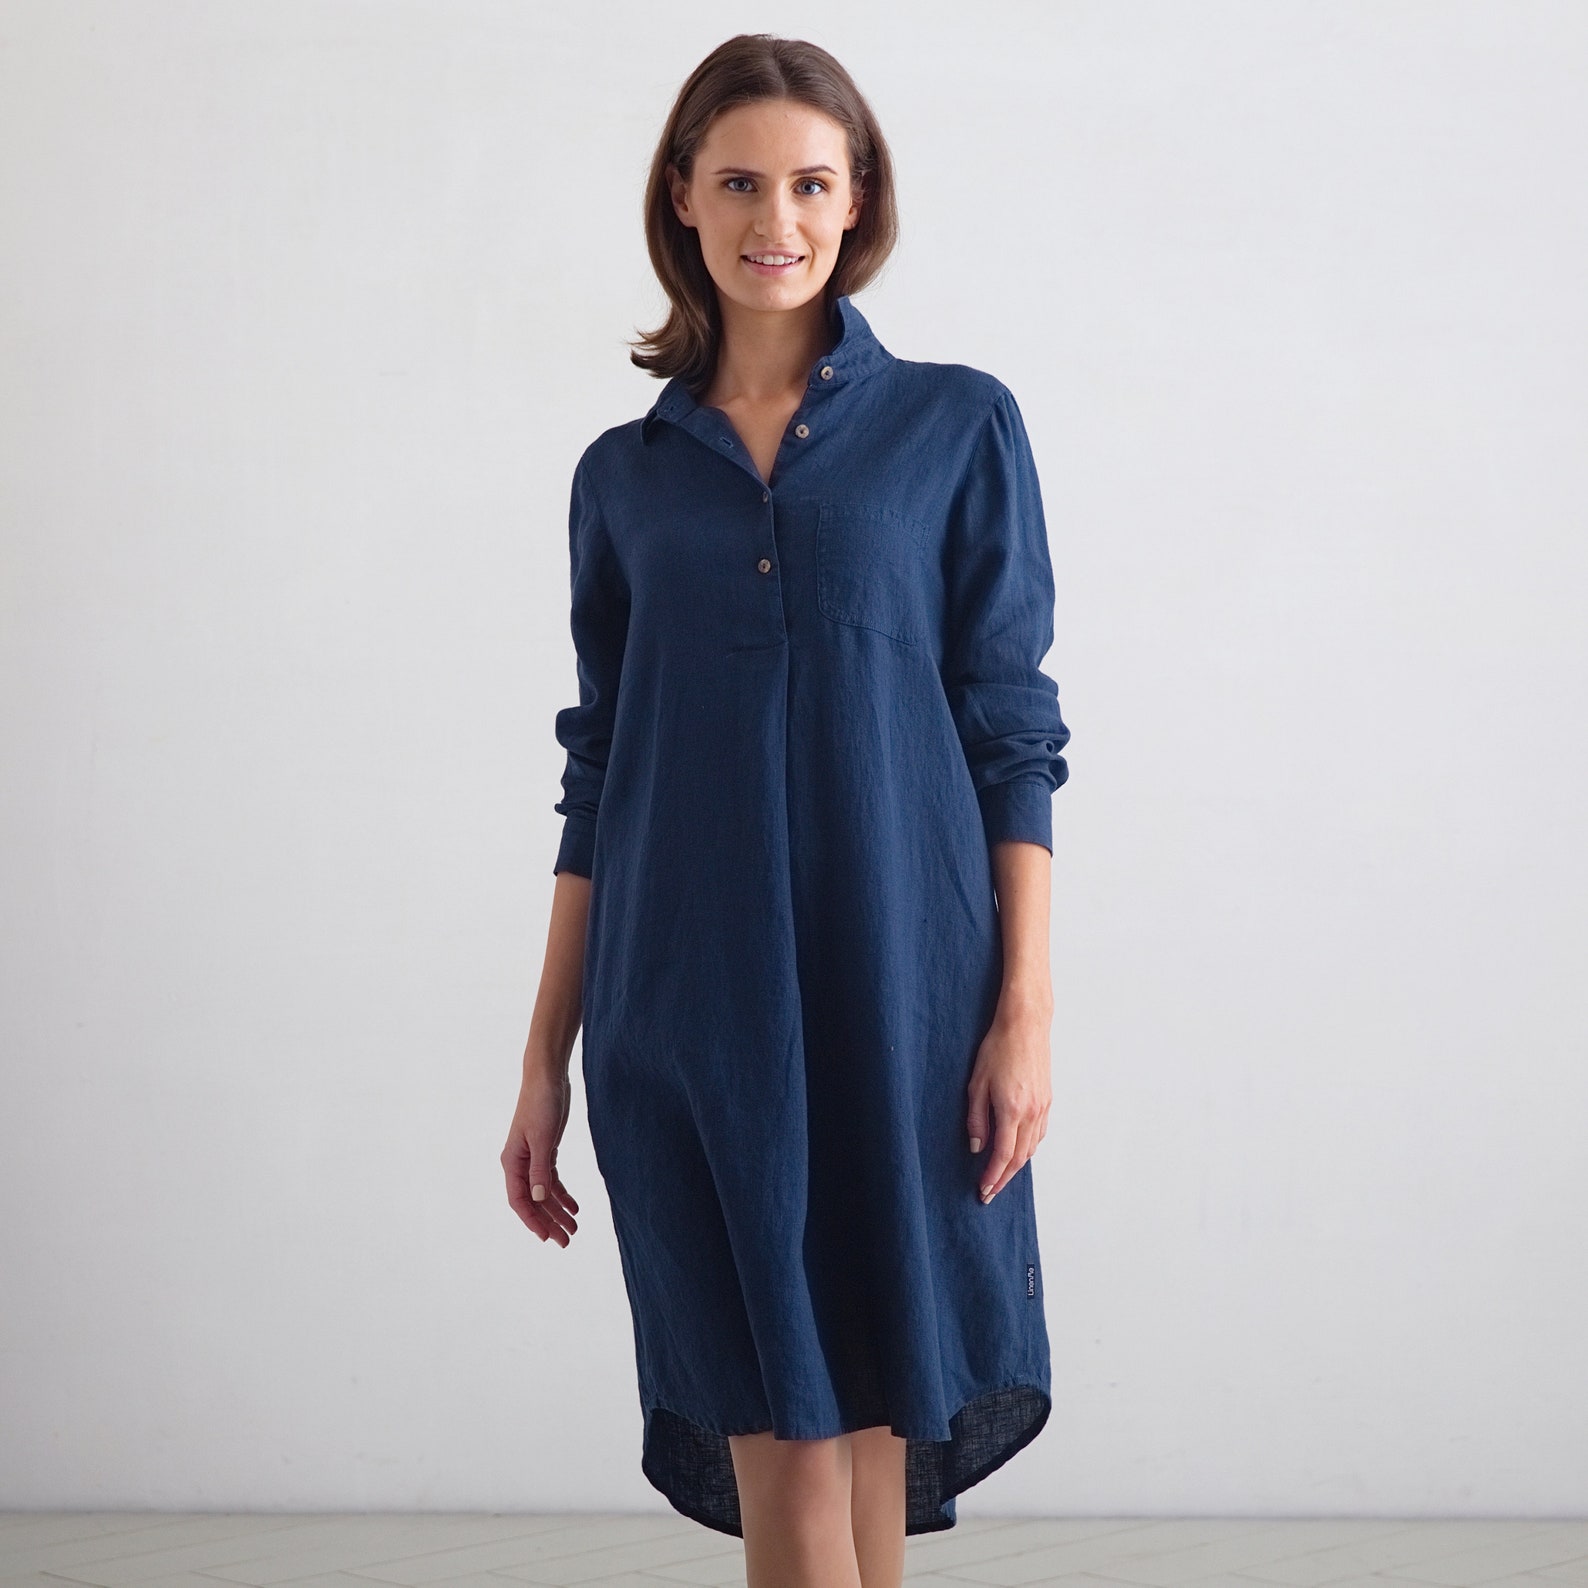 Linen Shirt Dress in Indigo Blue. Linen Clothing for Women in | Etsy